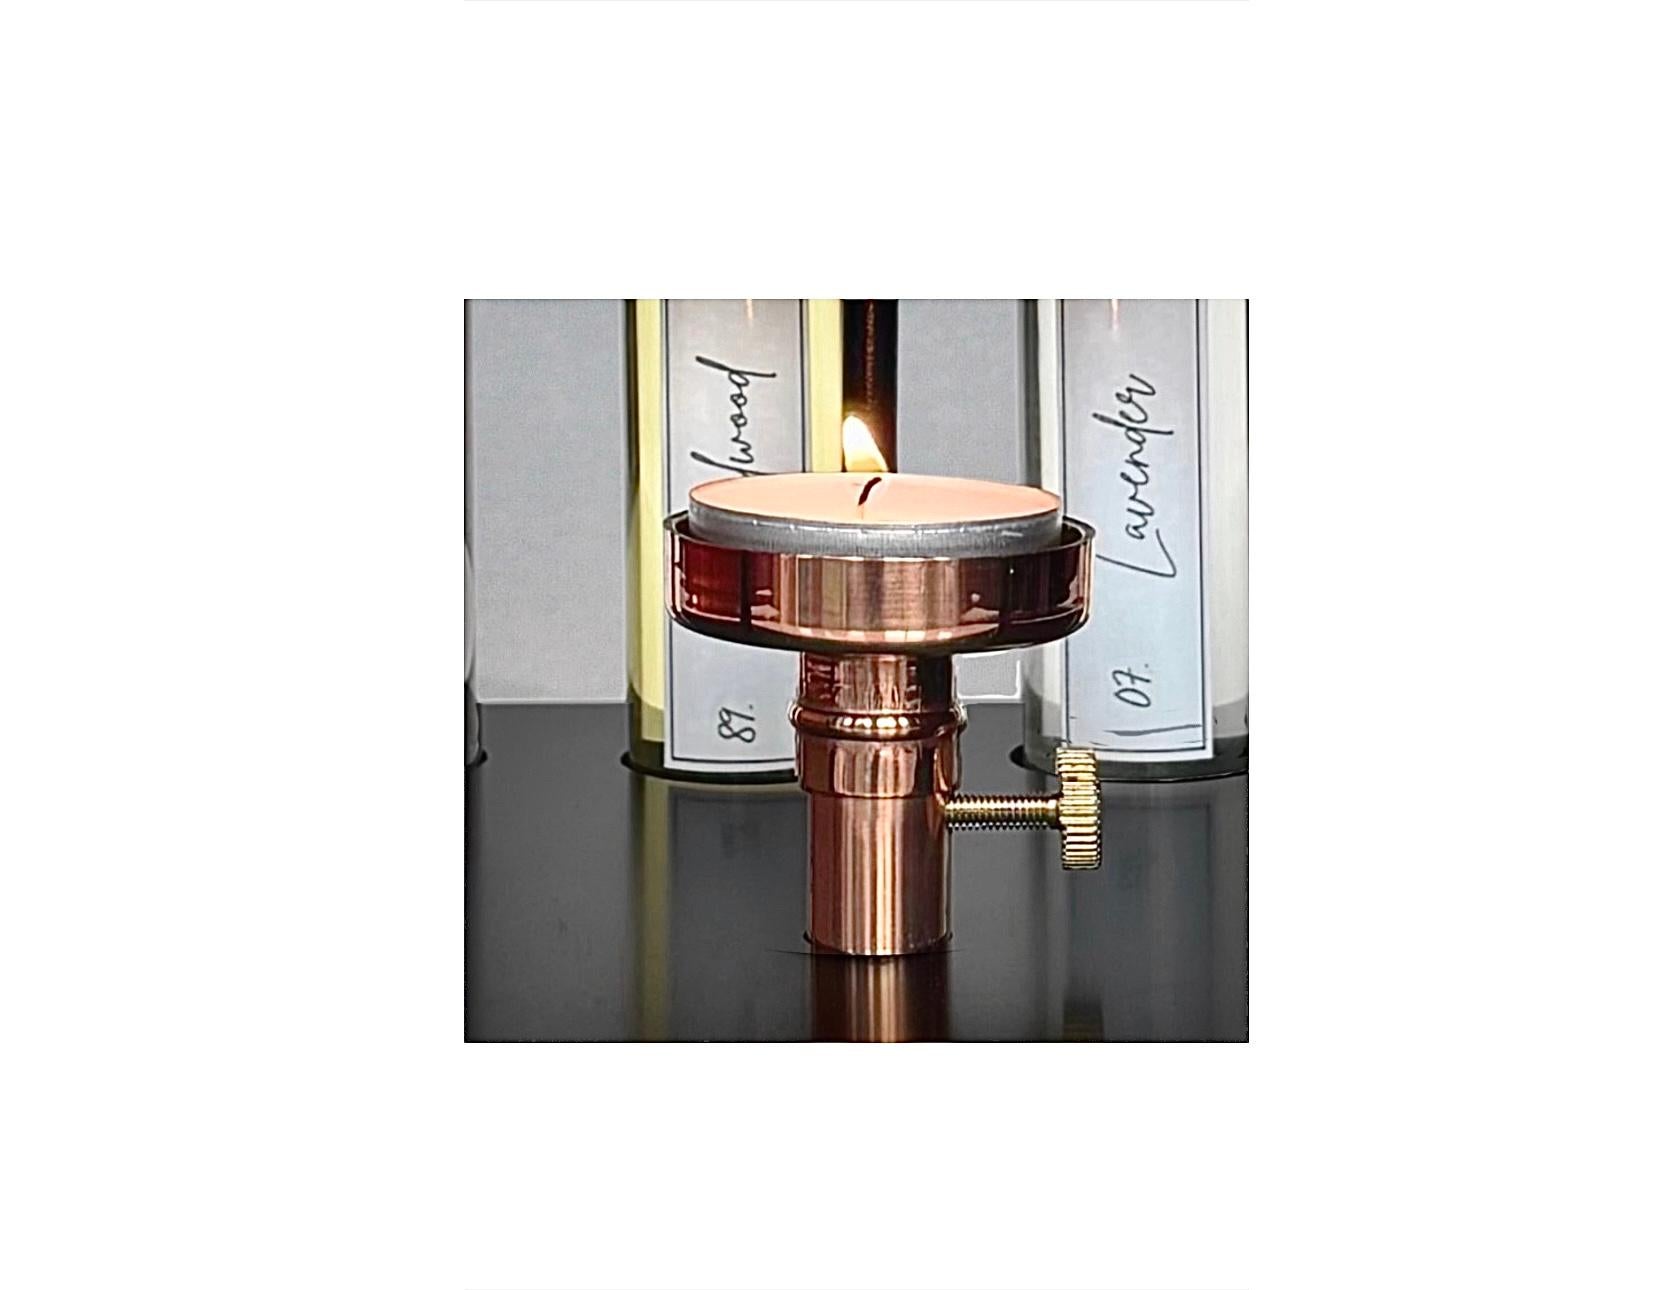 Unser exquisiter Oil Fragrance Burner - eine fesselnde Verschmelzung von Eleganz und Aromatherapie, die Ihr sensorisches Erlebnis aufwertet.
Unser mit Präzision gefertigter Brenner verbindet nahtlos Funktionalität mit einer nostalgischen 